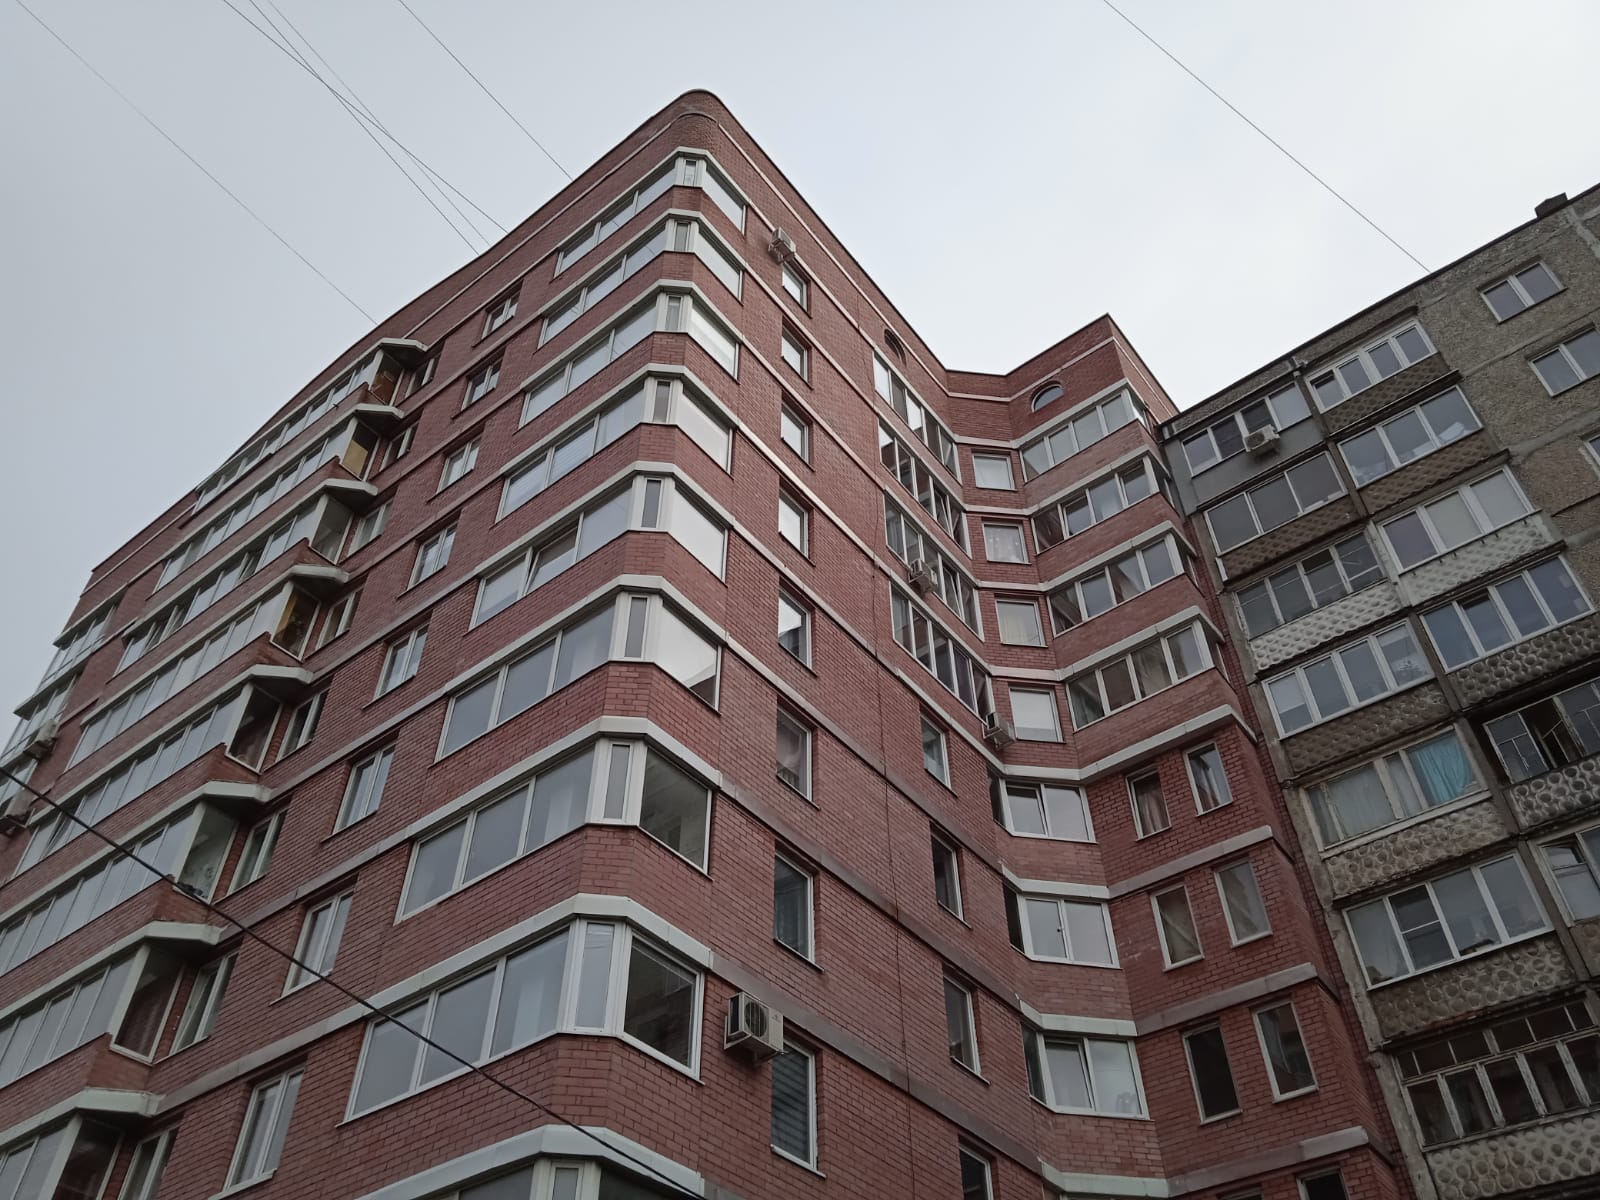 Еще одну «резиновую квартиру» обнаружили в центре Калининграда